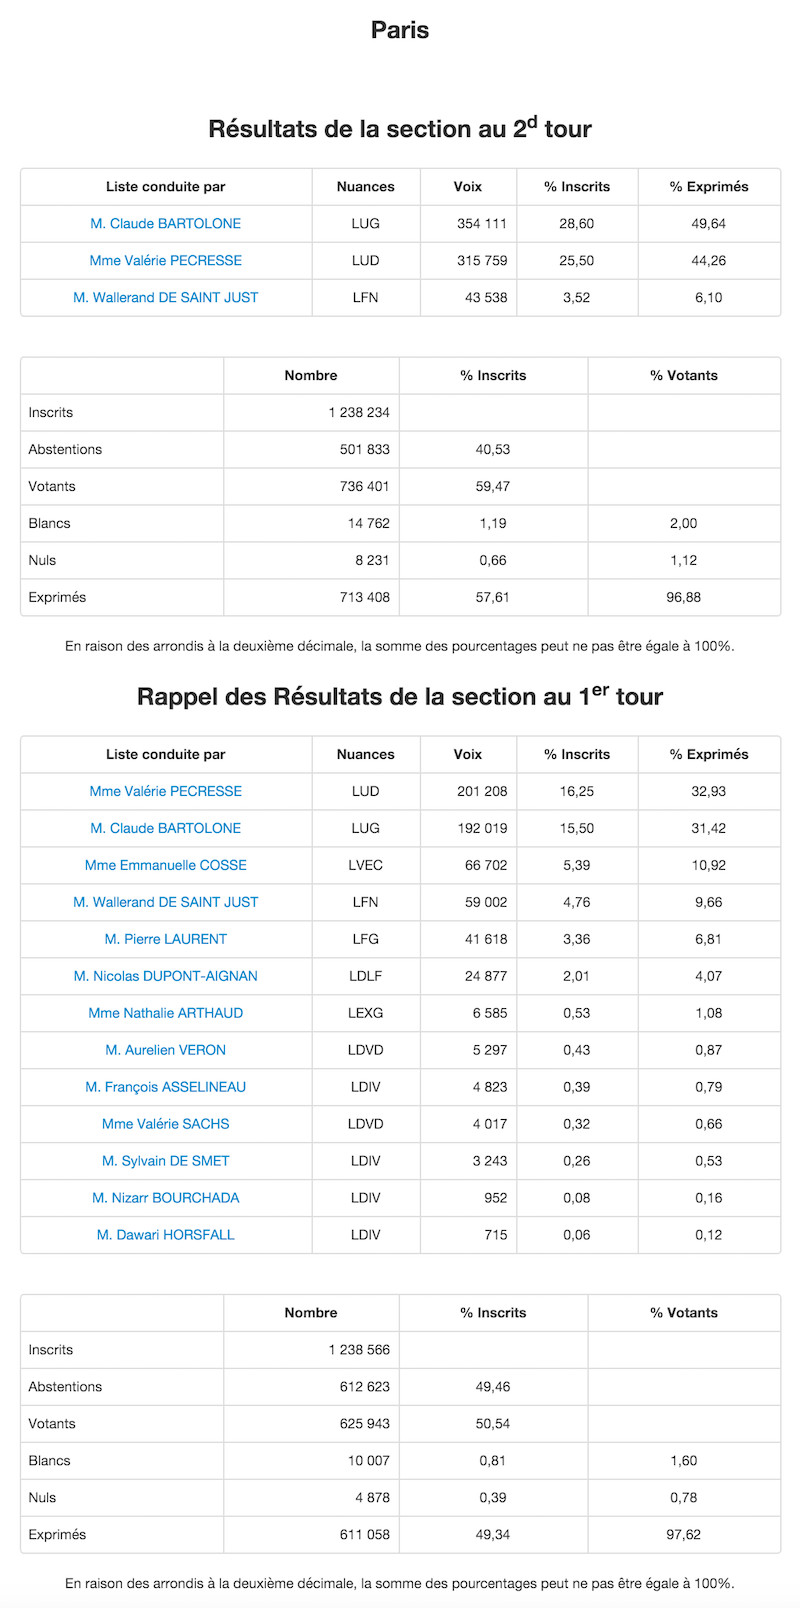 Régionales 2015 et 2010 dans le 17e arrondissement de Paris